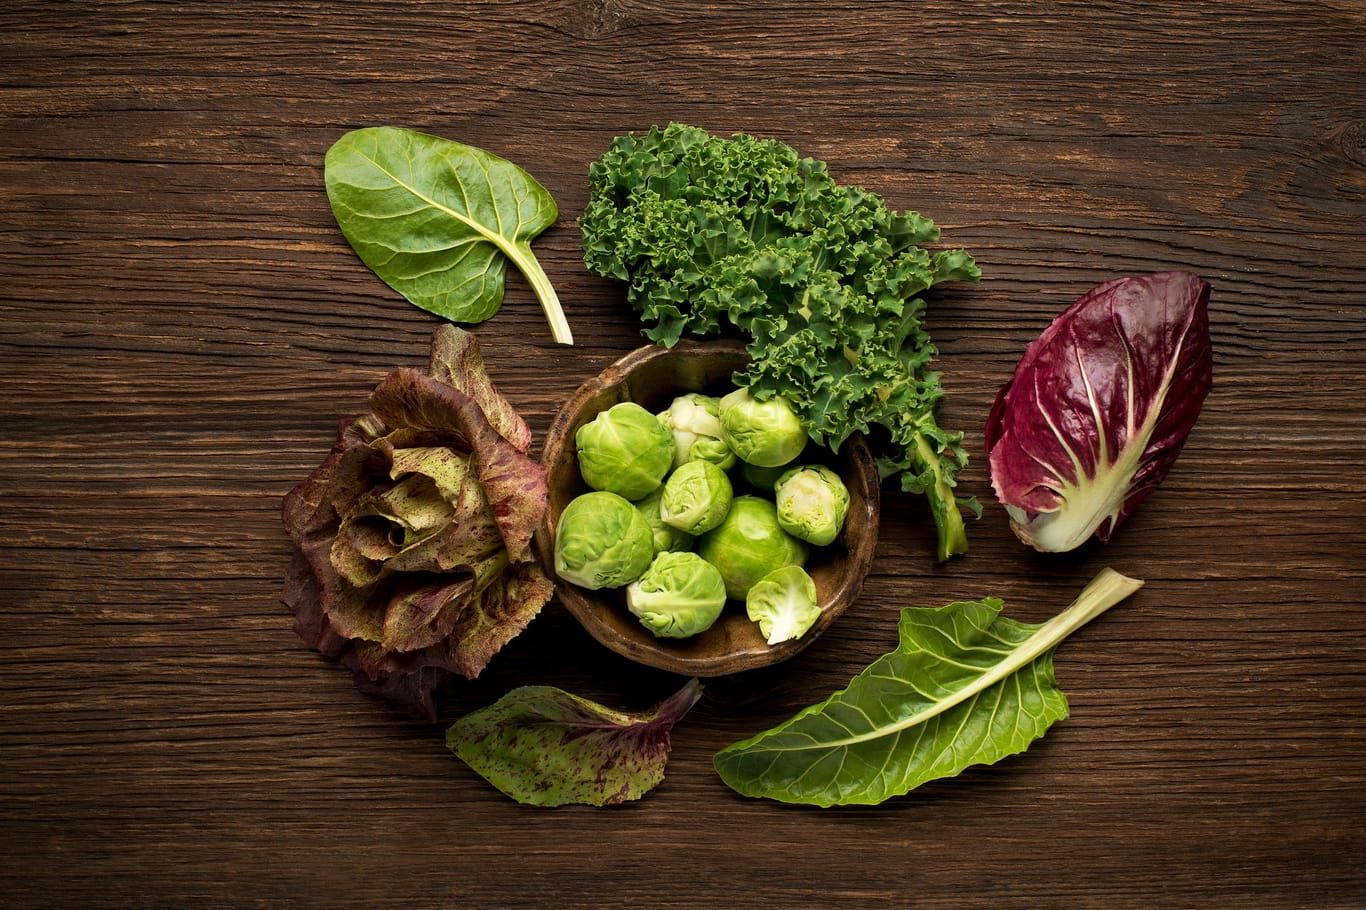 Reich an Bitterstoffen sind Salate wie Endiviensalat, Rucola und Radicchio sowie grünes Blattgemüse wie Spinat und Rosenkohl.